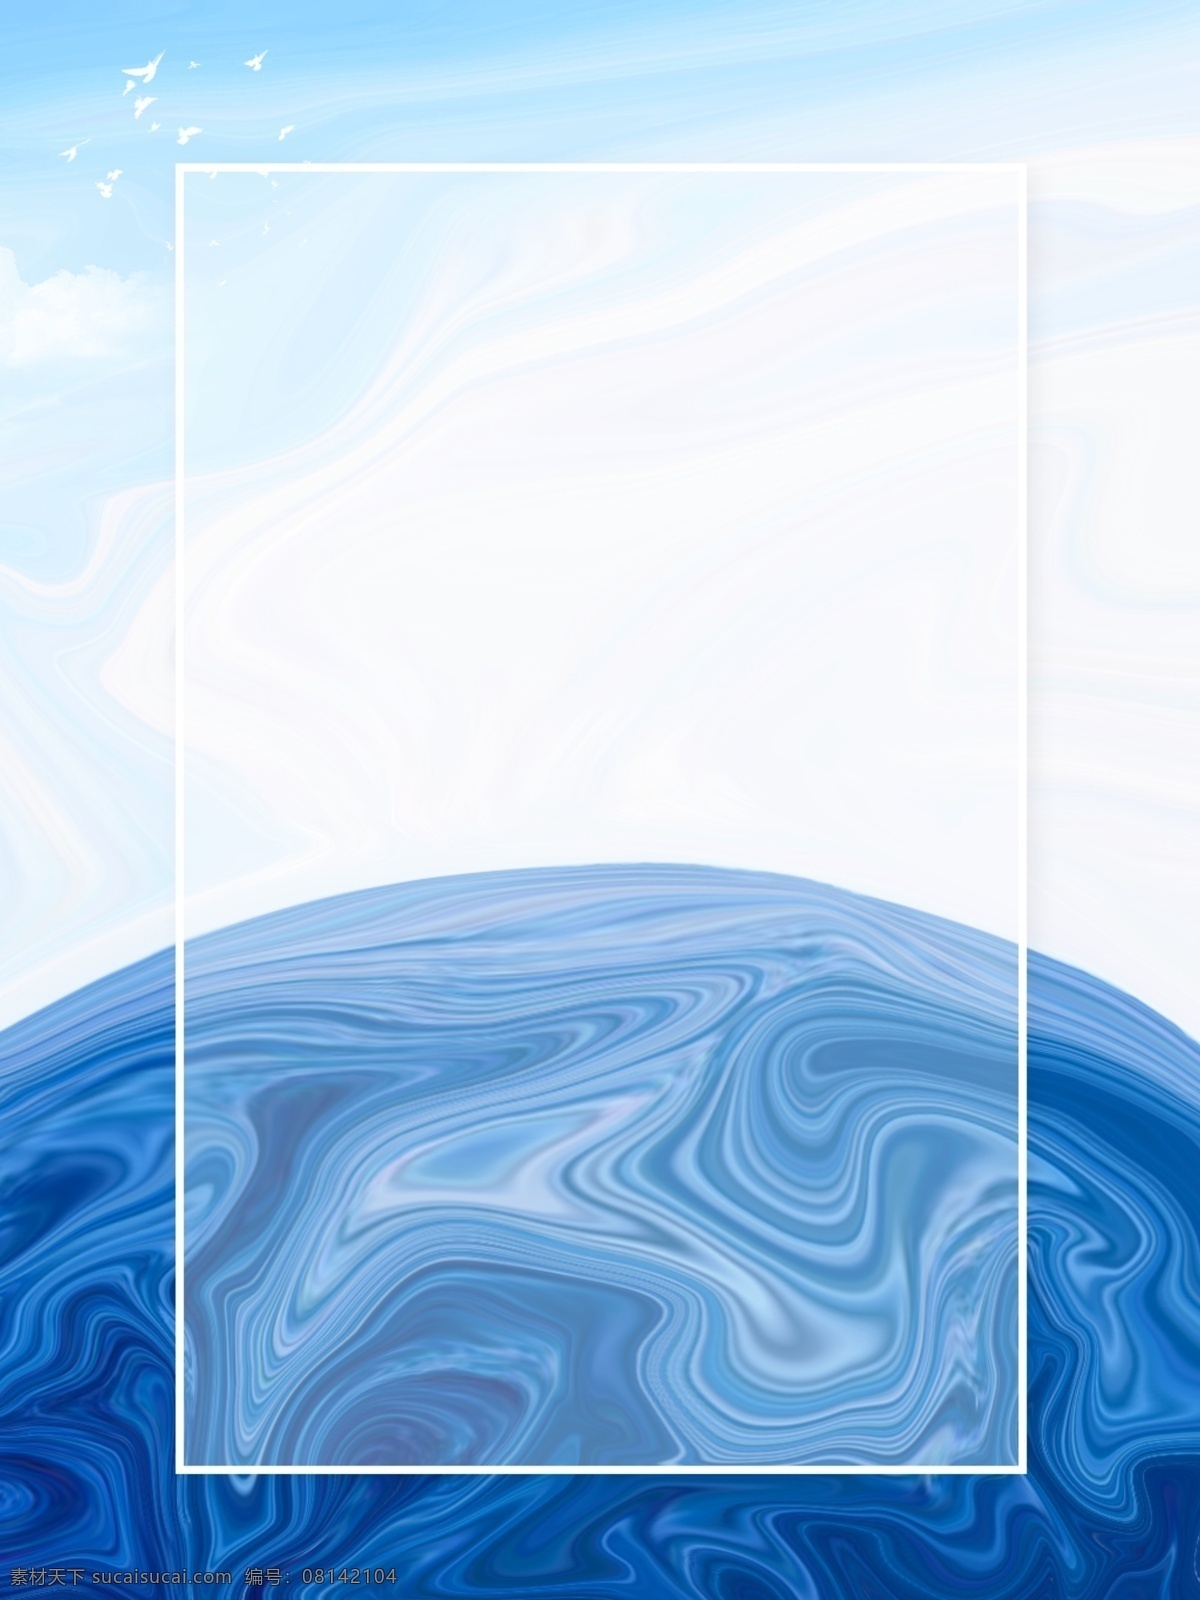 创意 手绘 海洋 蓝天 白云 背景 简约 地球 油漆风格 水彩